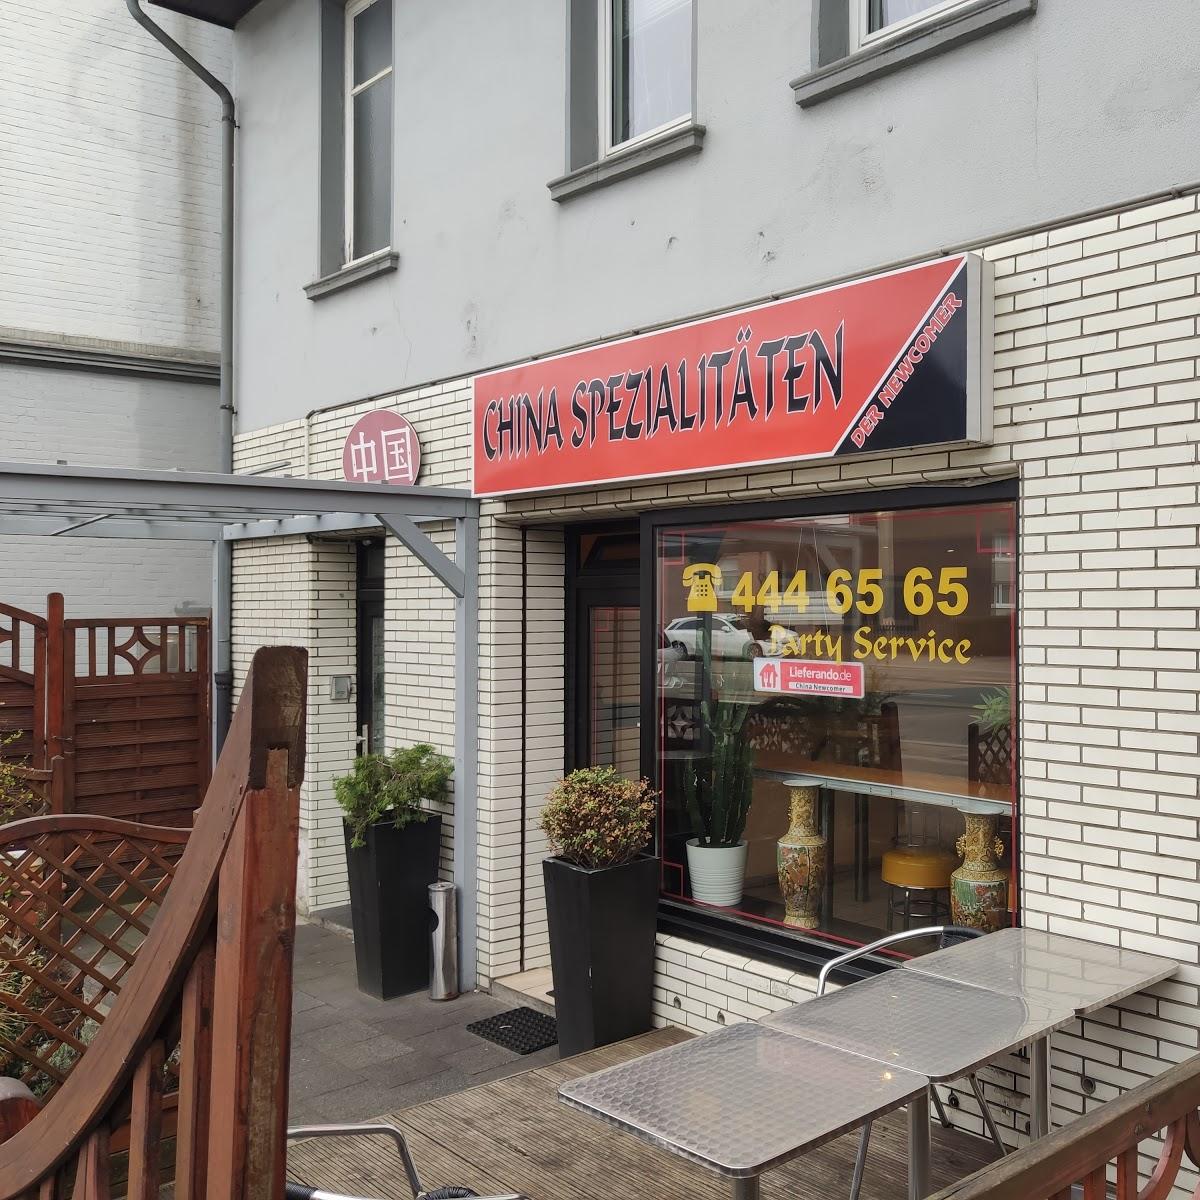 Restaurant "China Newcomer" in Mülheim an der Ruhr